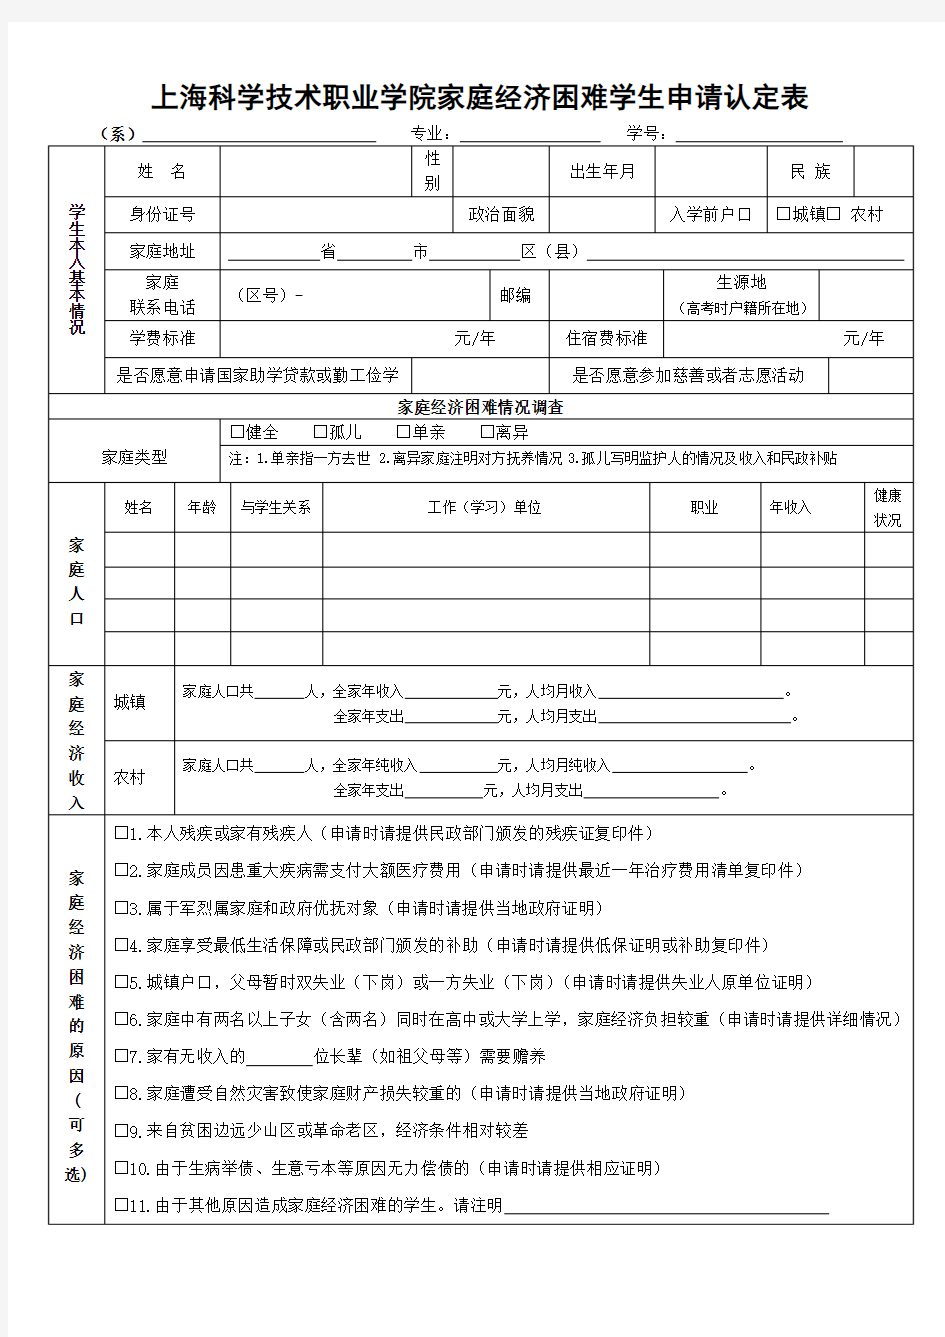 上海科学技术职业学院家庭经济困难学生申请认定表